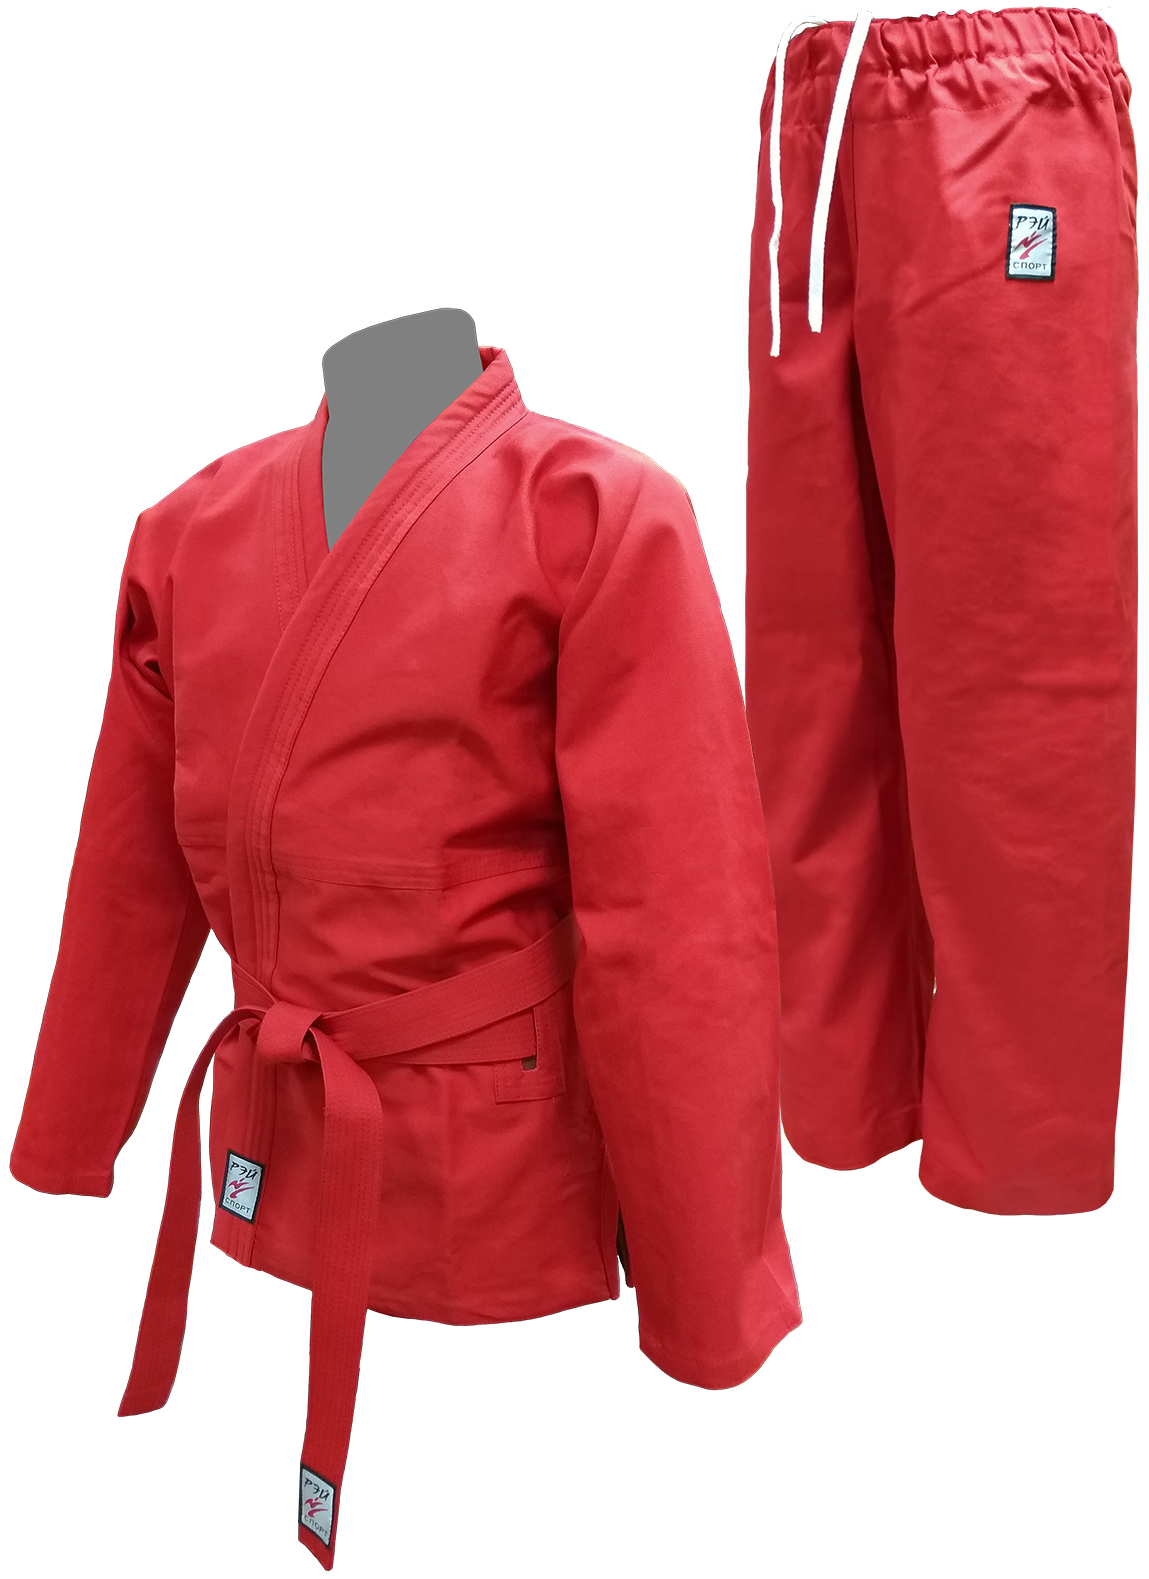 Кимоно (костюм) РЭЙ-СПОРТ для Универсального боя, 36, красное